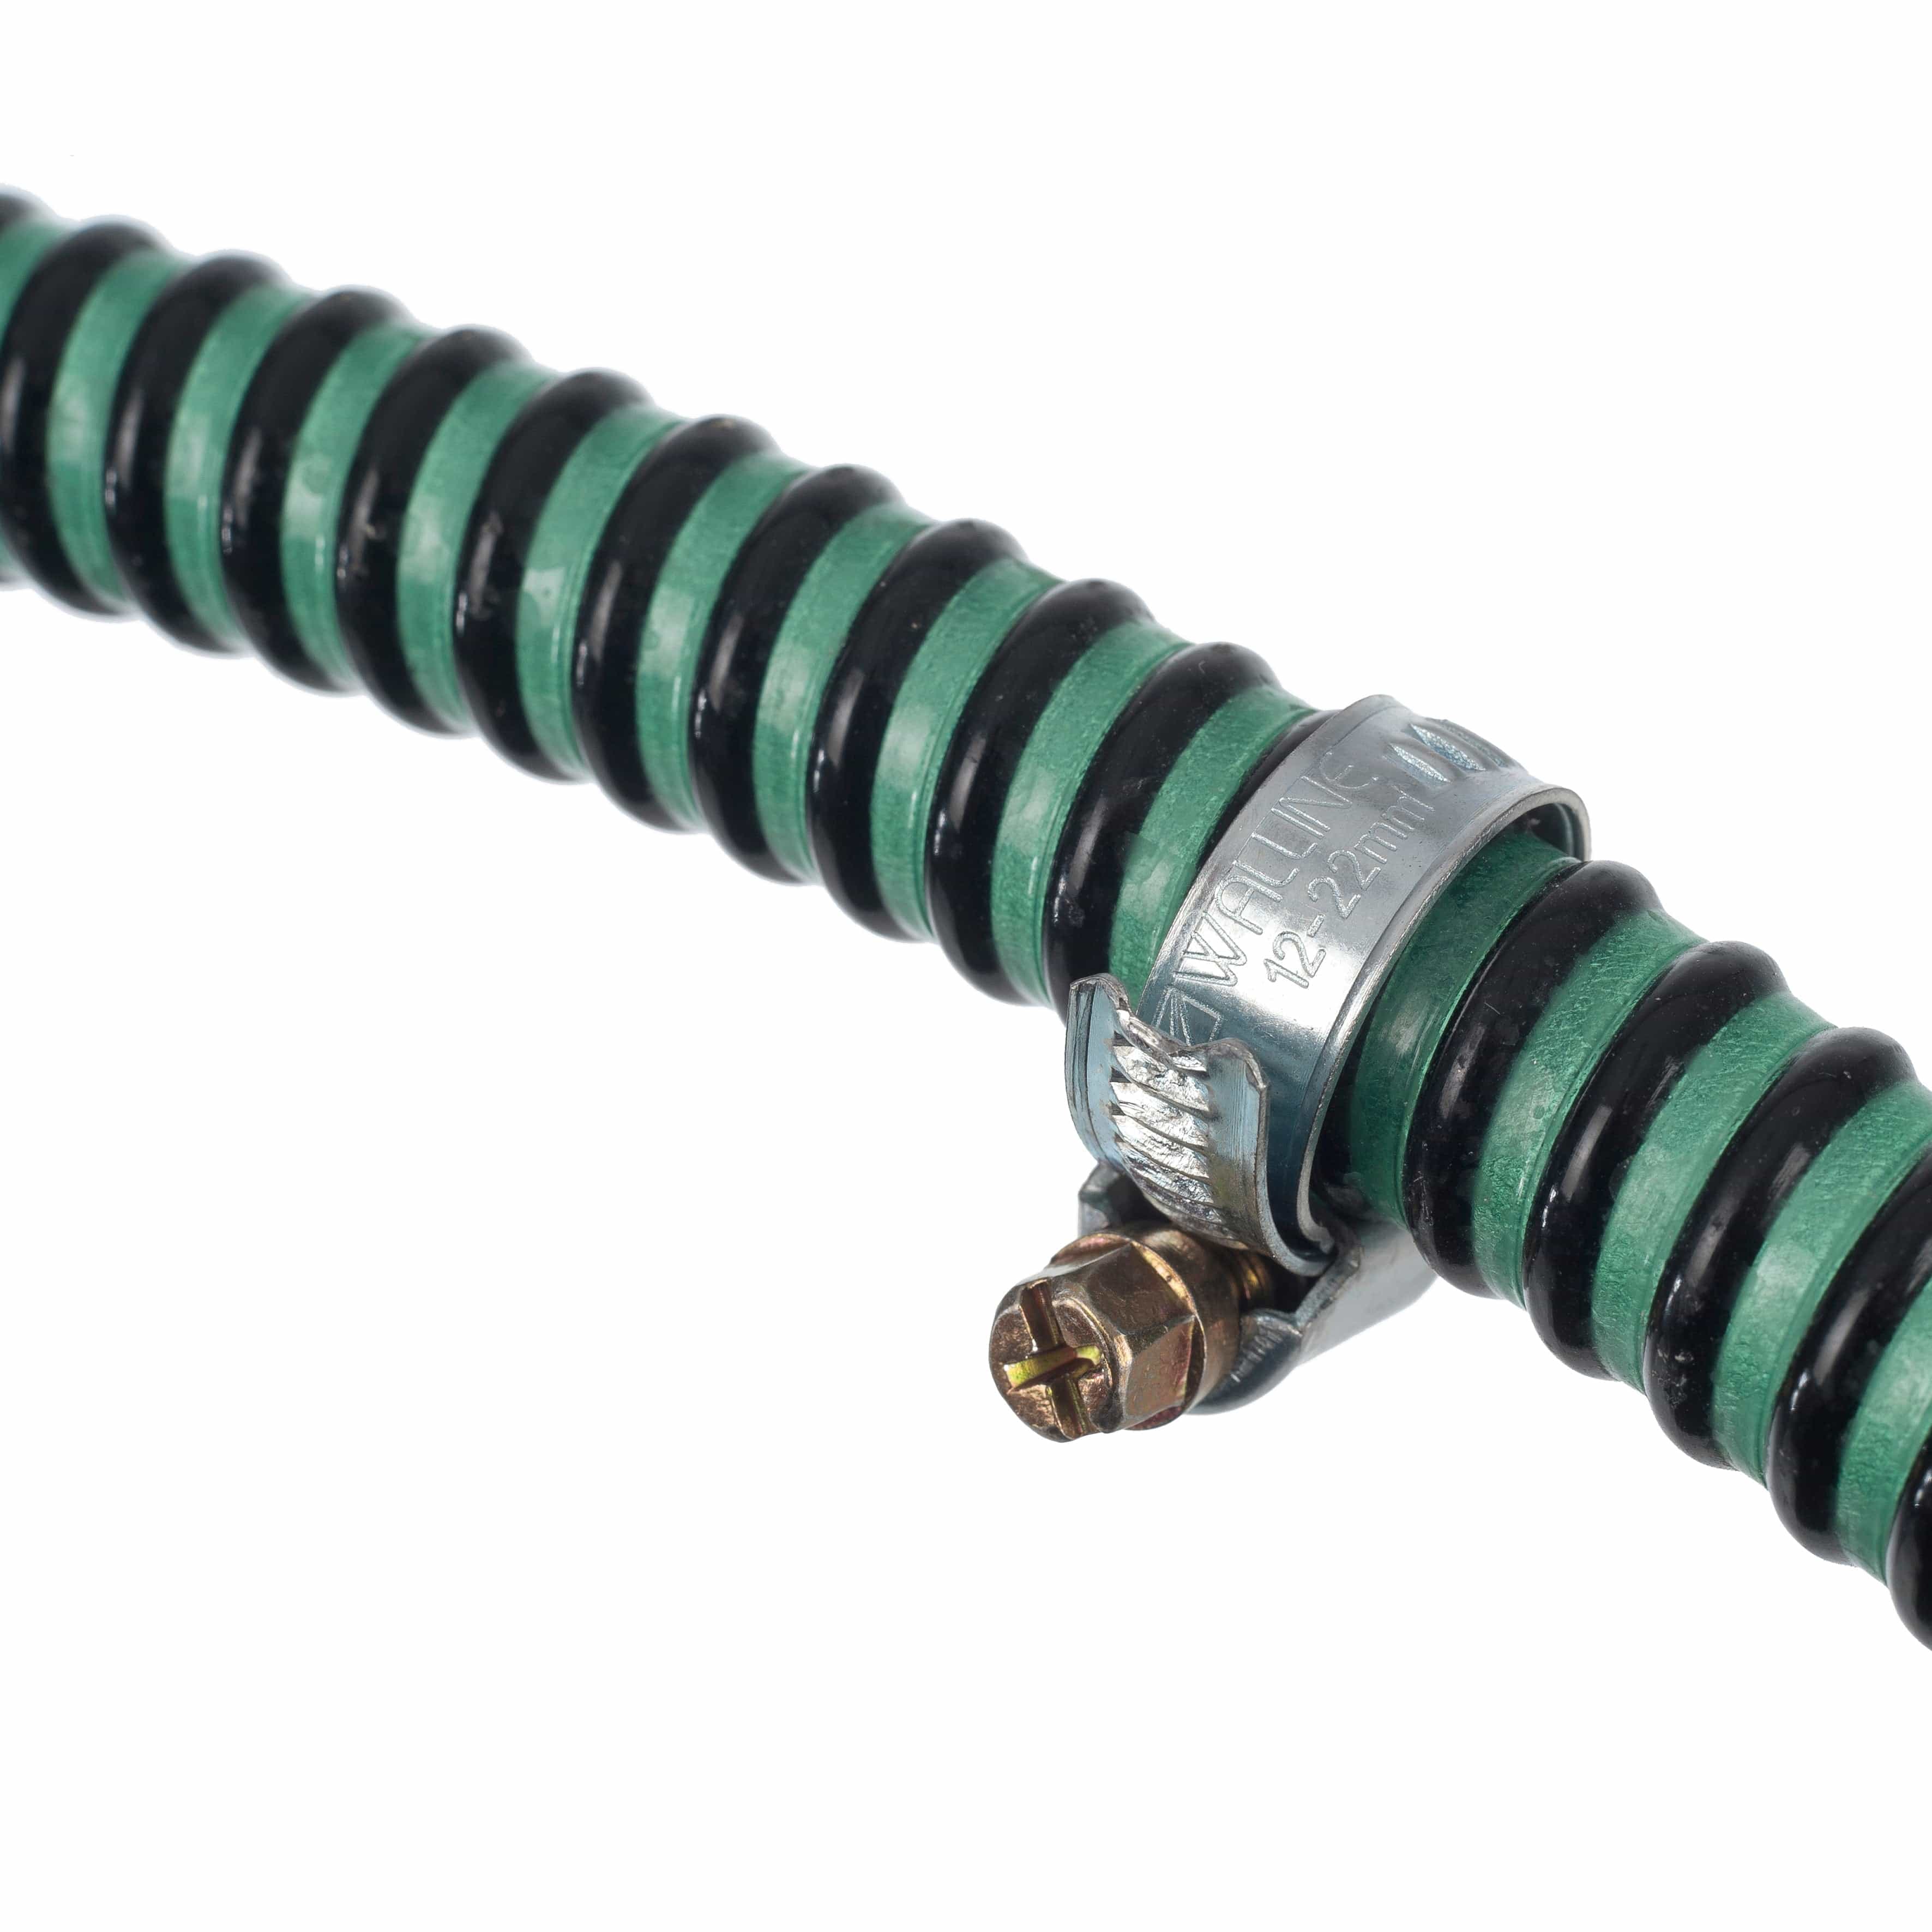 PONDSHOPI UBBINK Colliers de serrage galvanisés pour tuyaux lisses et légers - Ø50 mm - 2 x 8711465101226 1510122